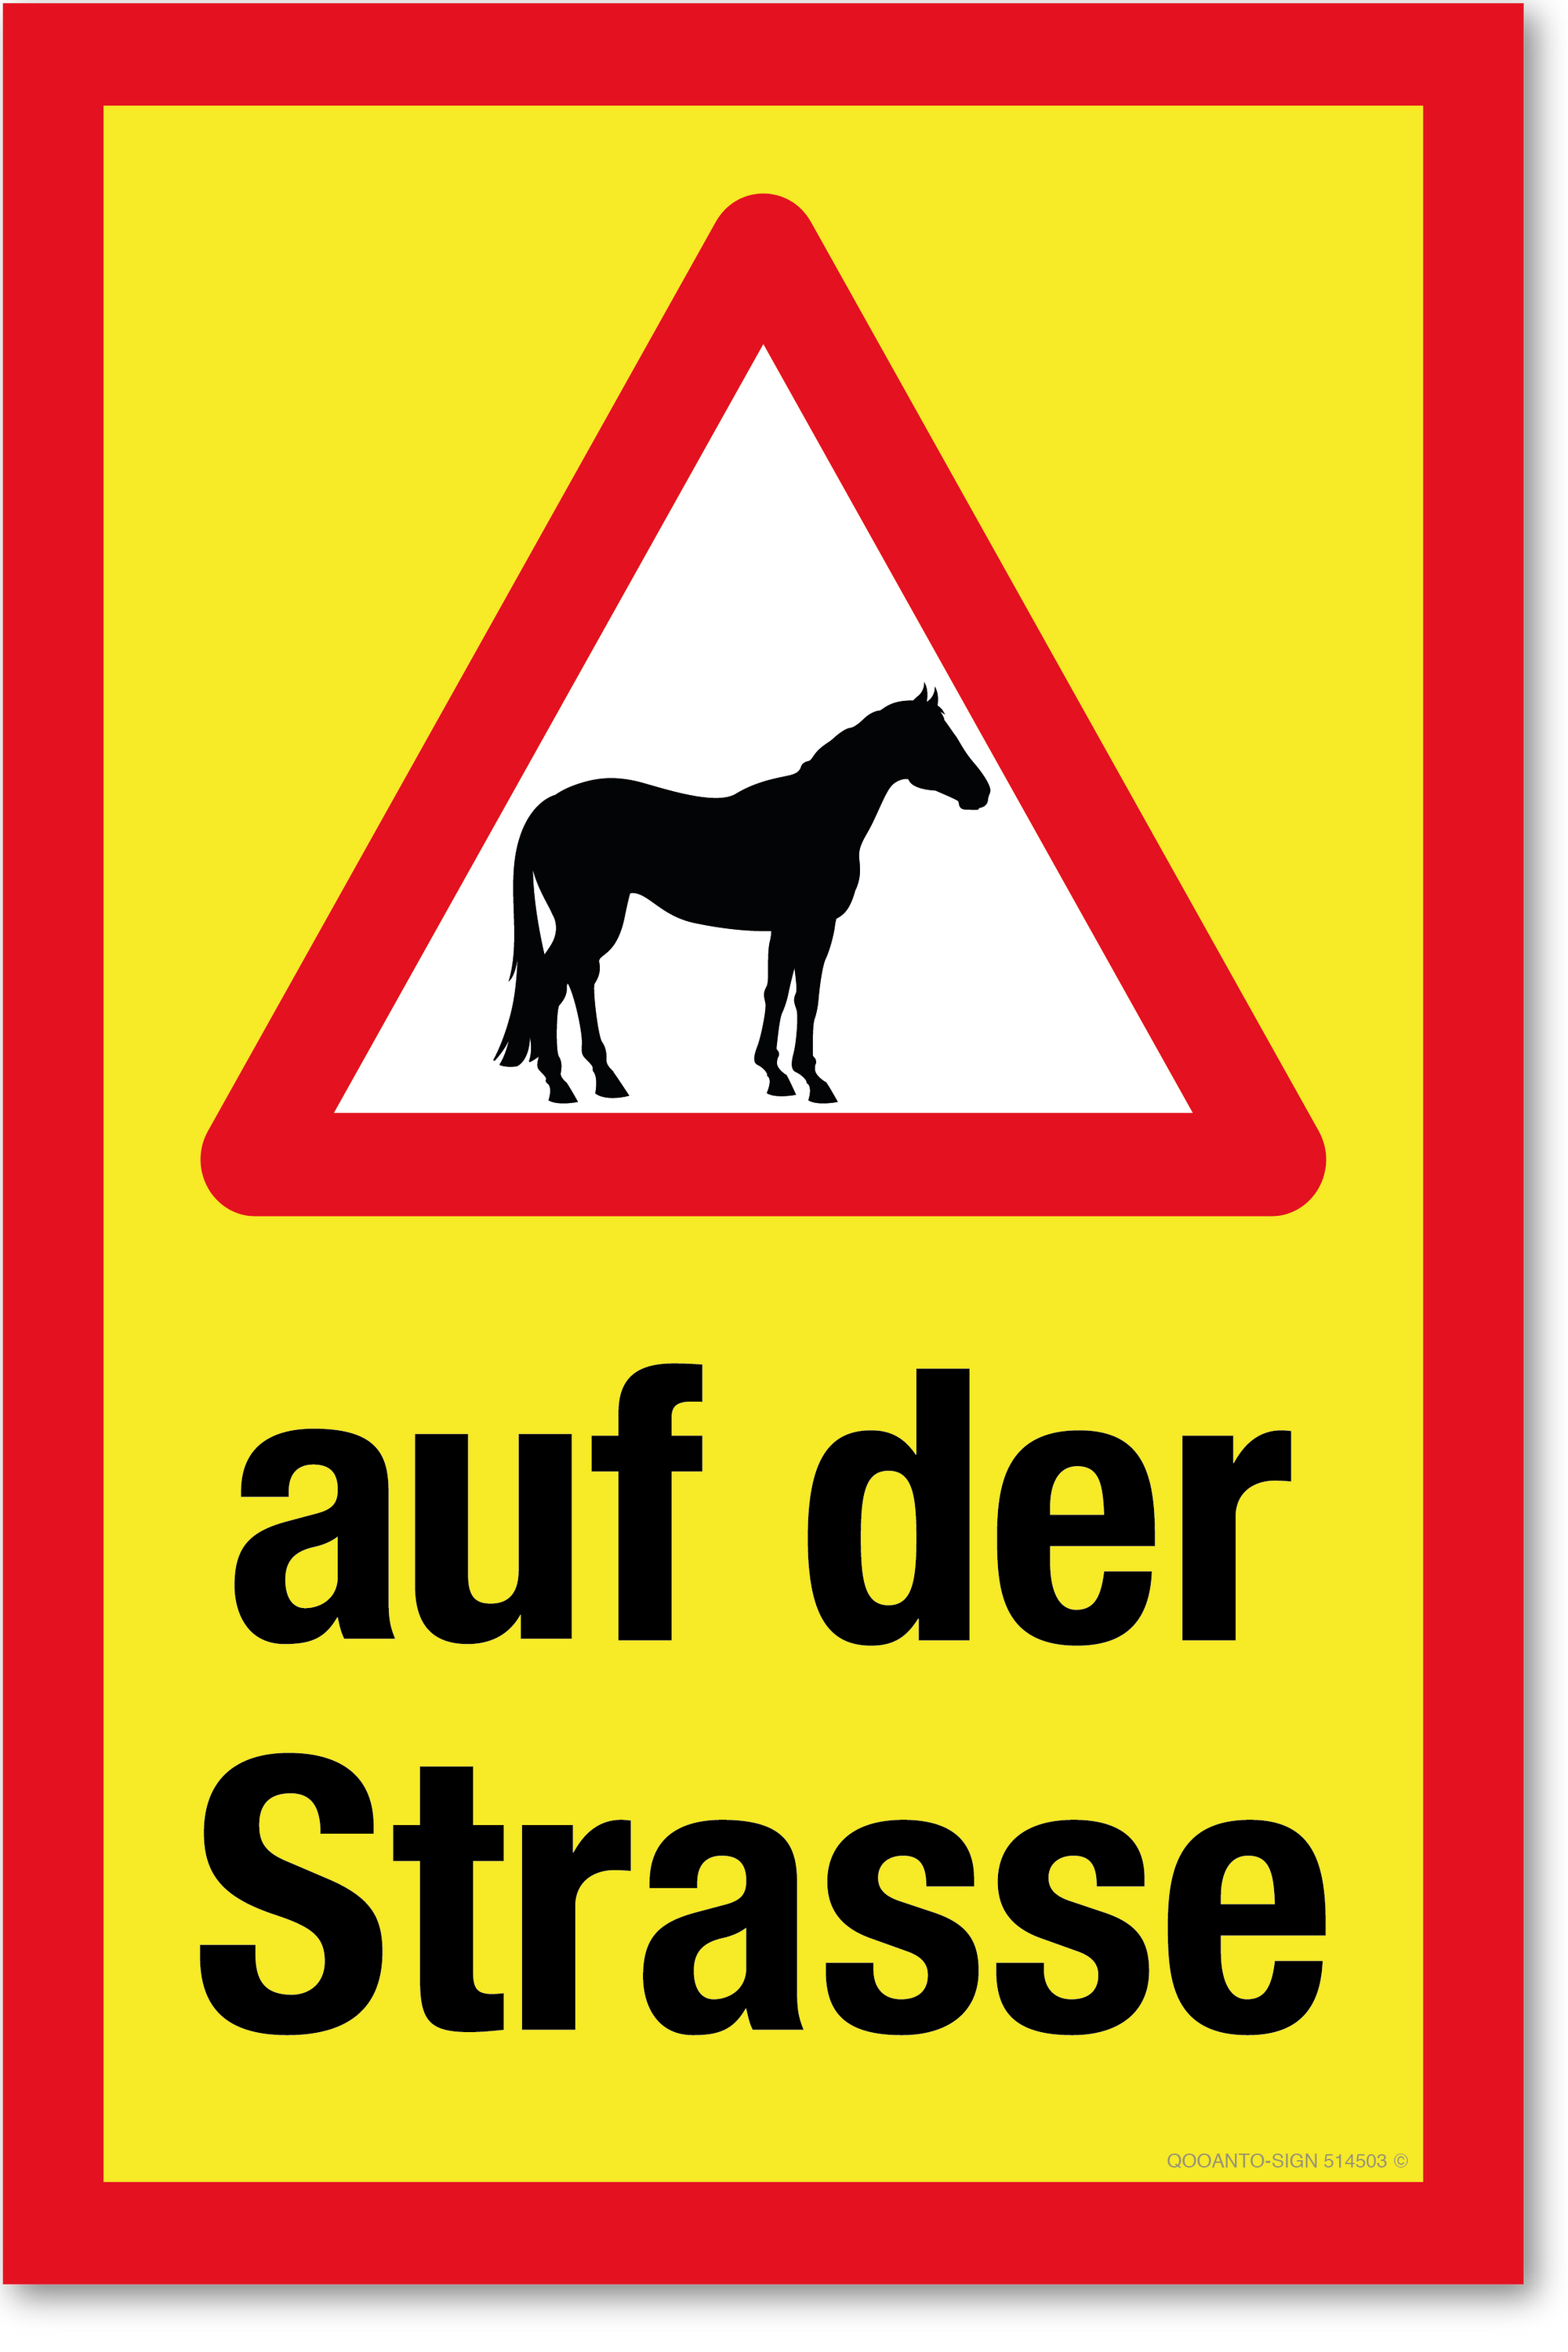 Warndreieck mit Pferd - auf der Strasse, gelb, Schild oder Aufkleber